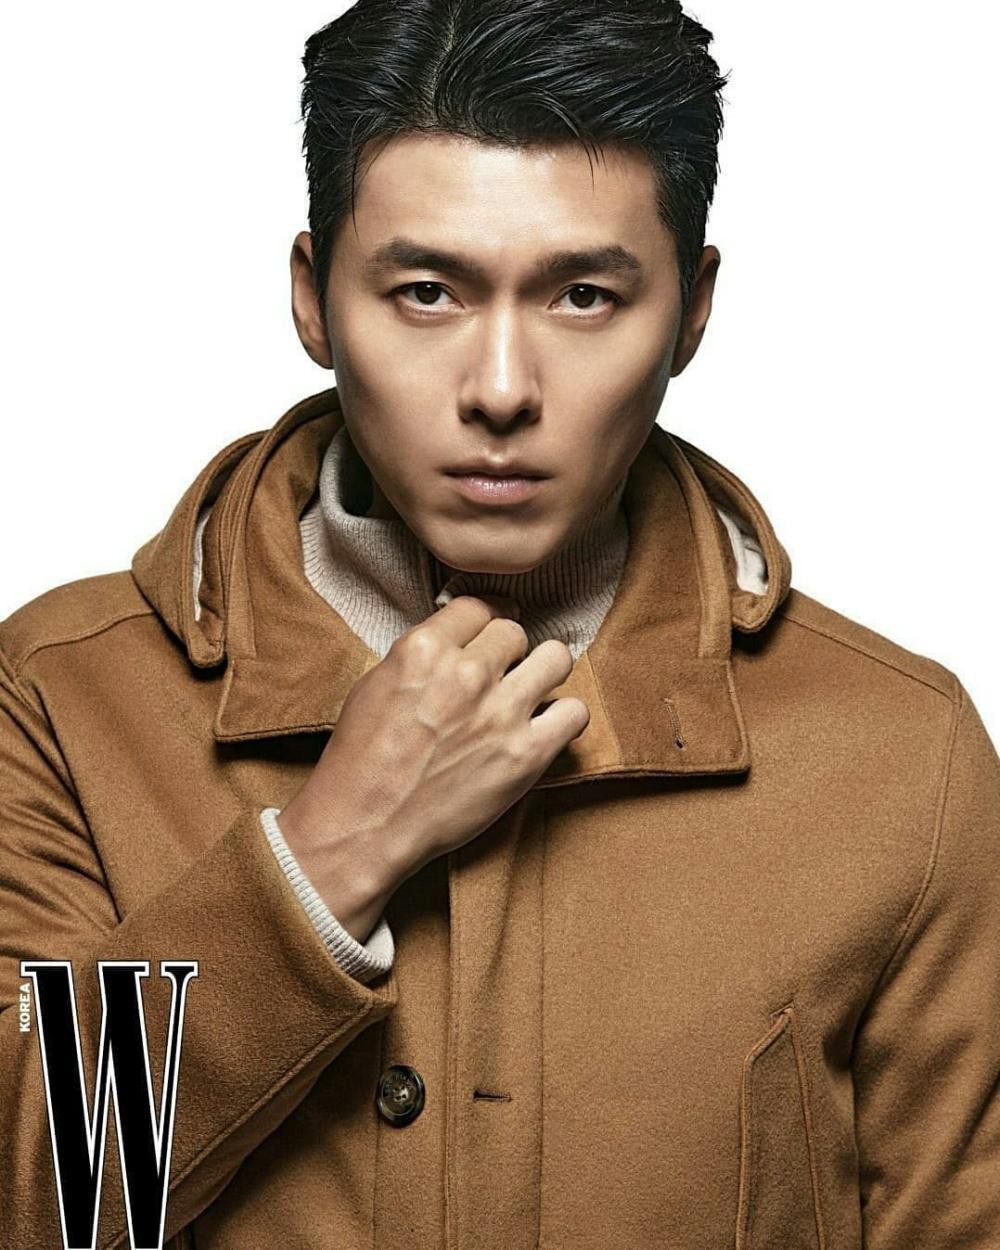 Anh thường xuyên hợp tác với những thương hiệu cao cấp. Gần đây nhất, Hyun Bin đã đồng hành cùng nước hoa Tom Ford tại thị trường châu Á.